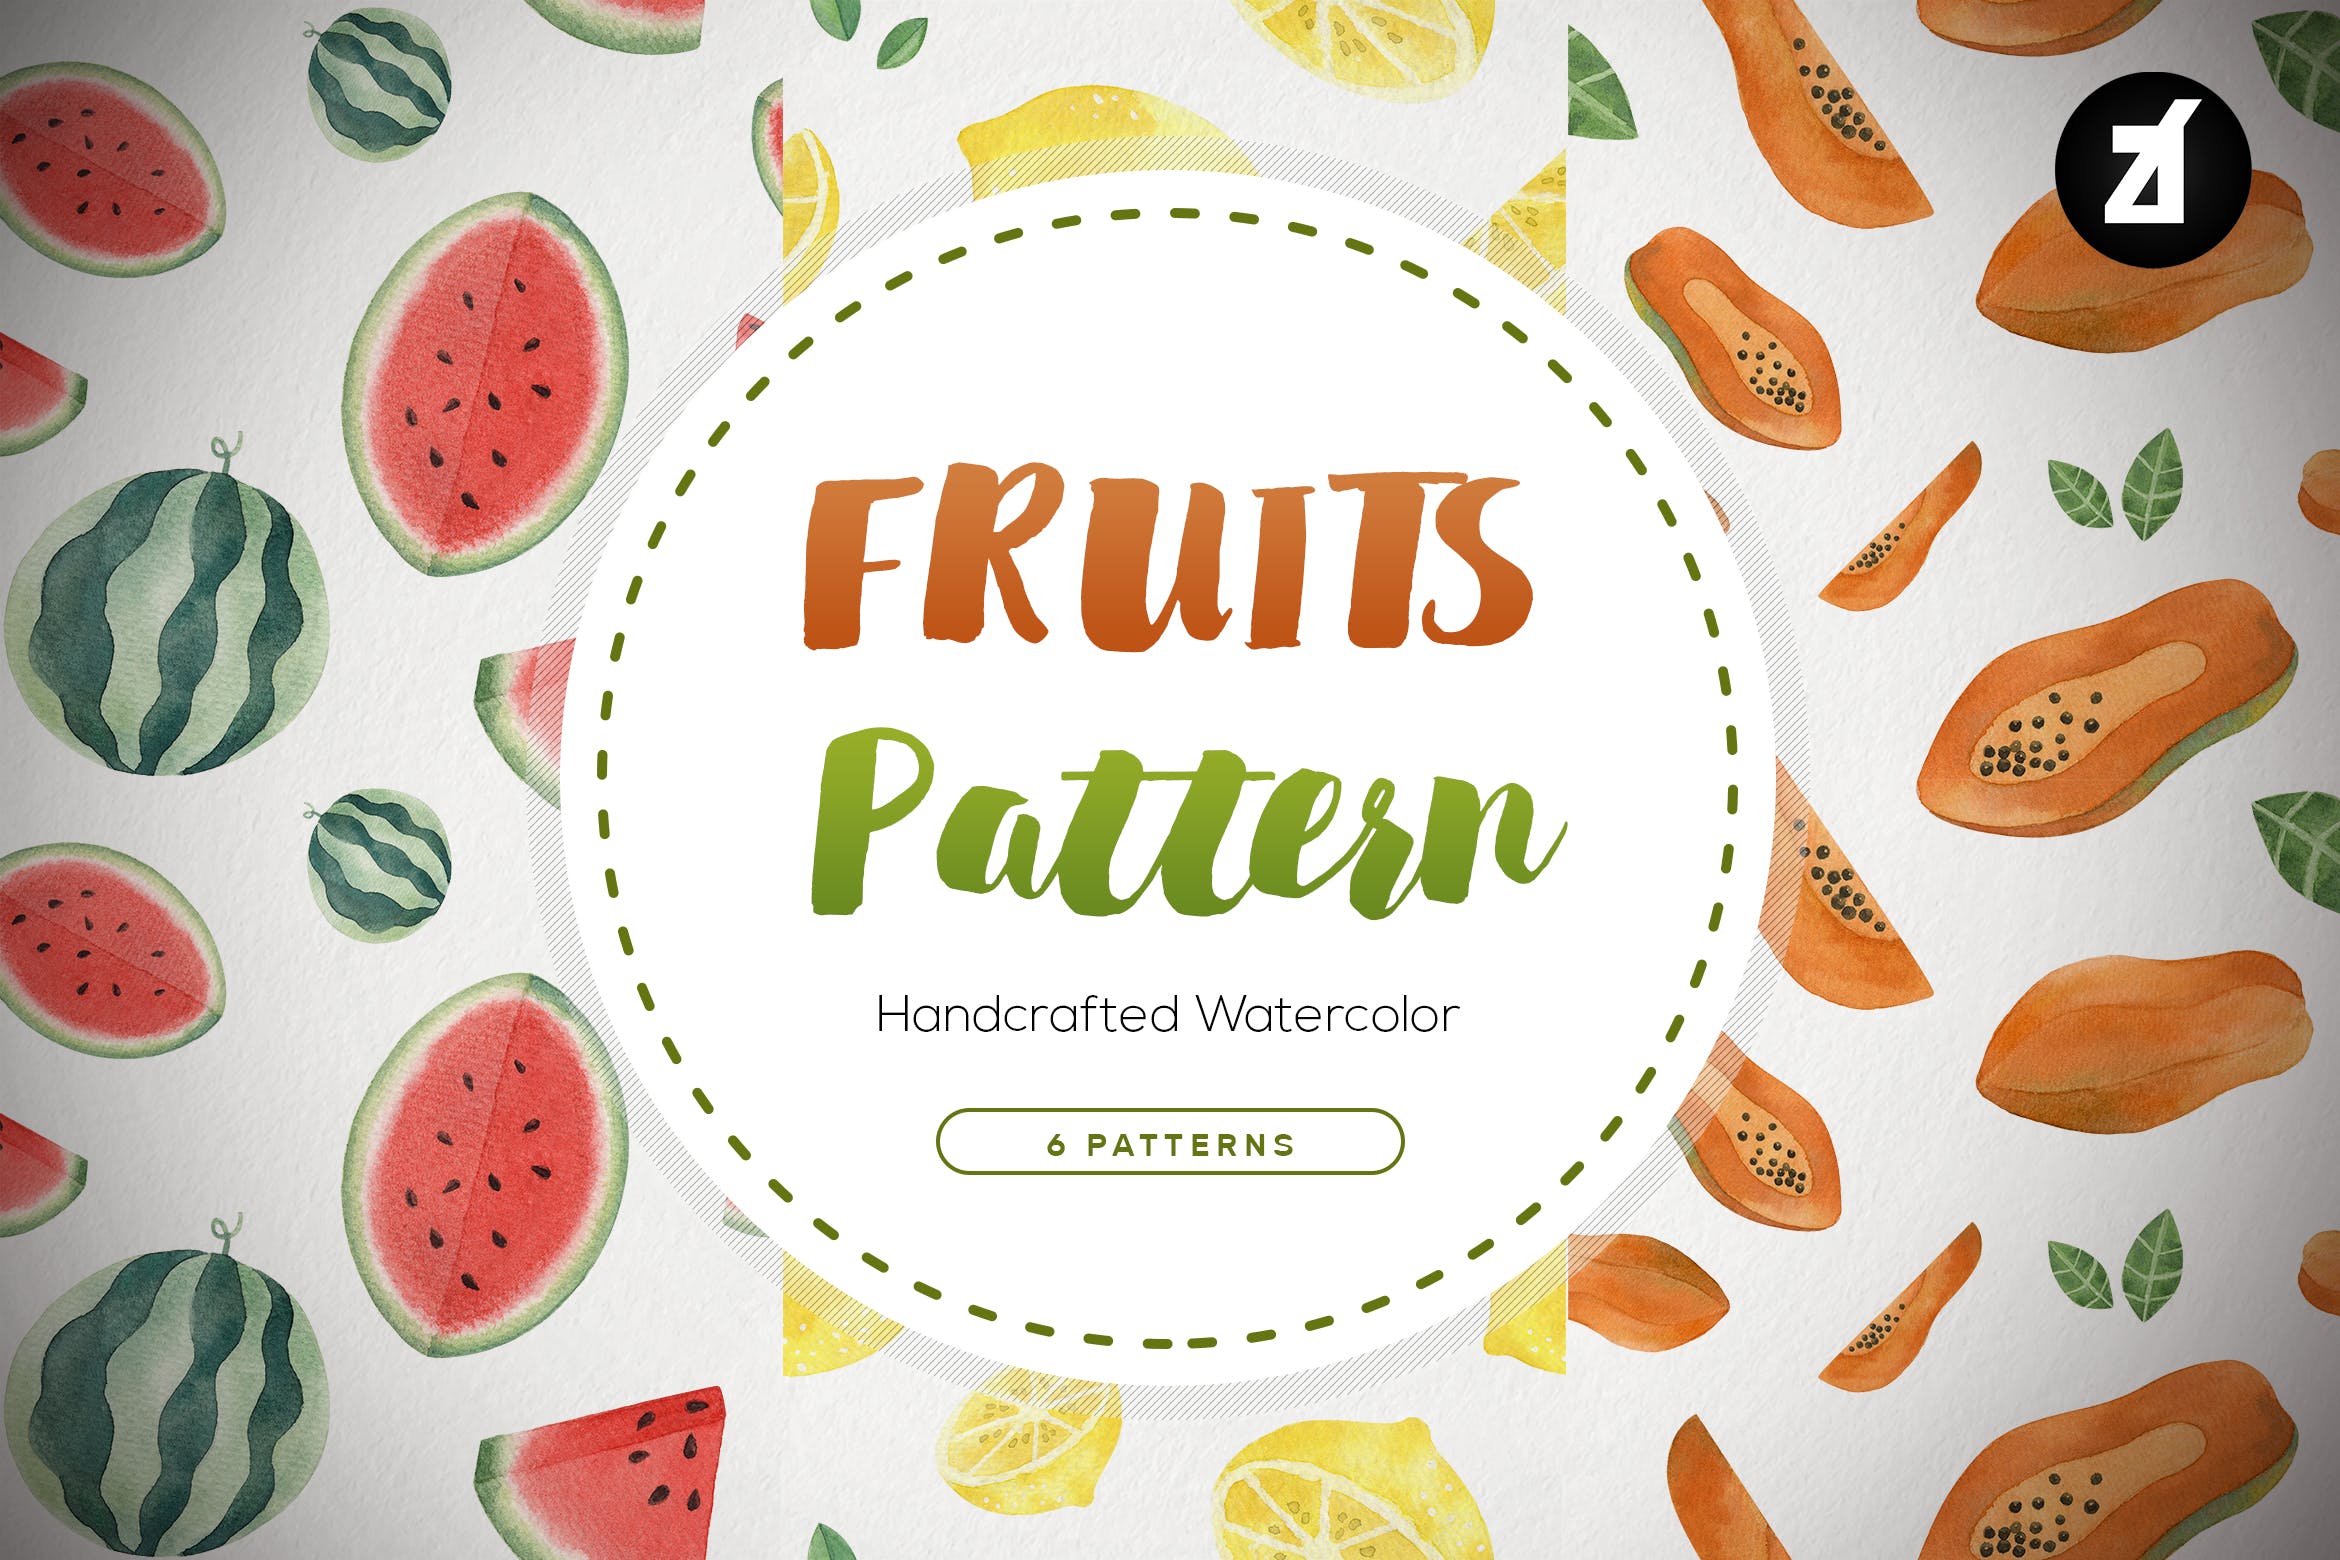 水彩手绘水果图案纹样背景素材 Fruits pattern hand-drawn watercolor illustration插图